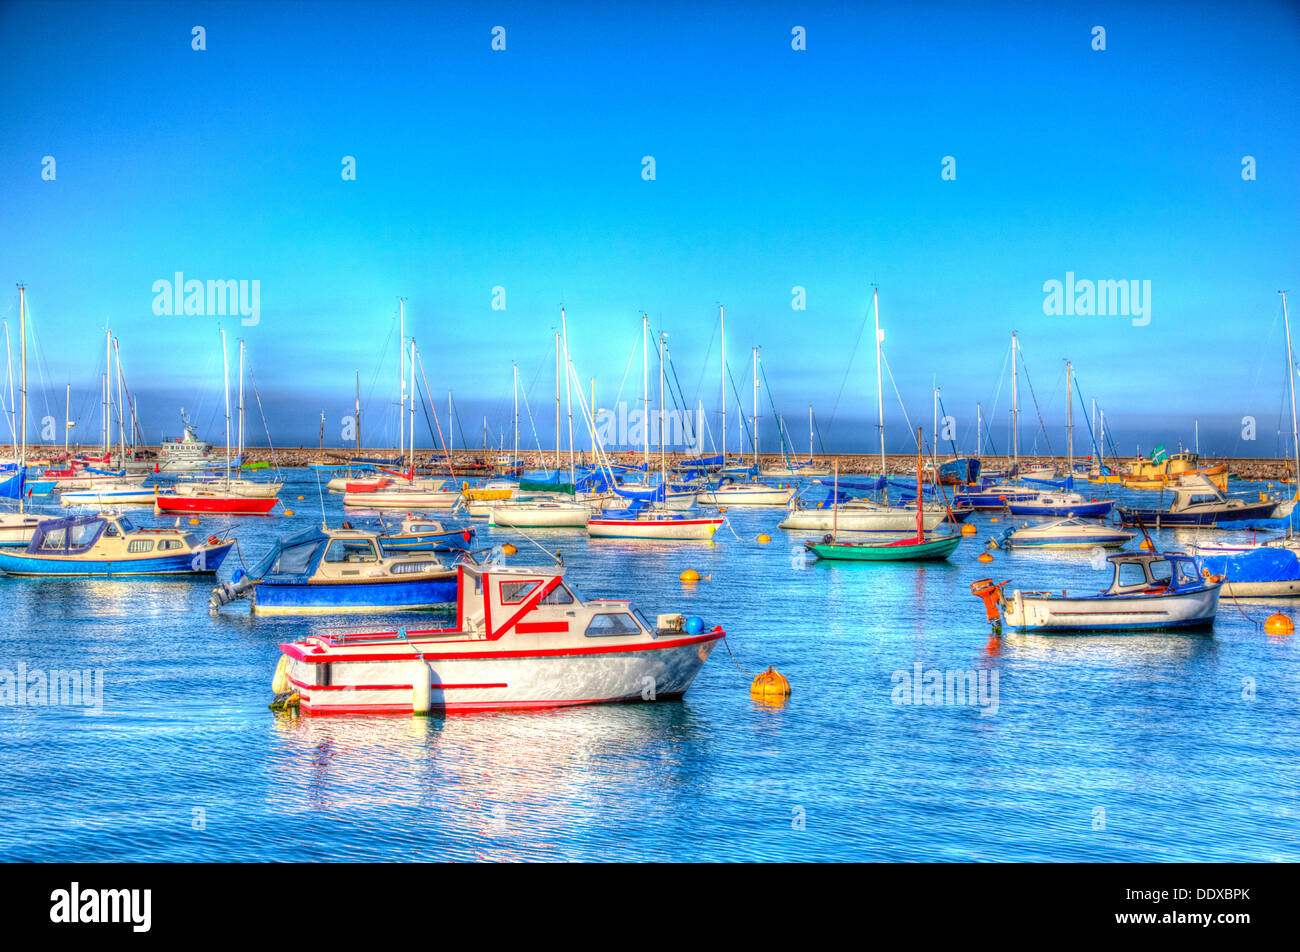 Bleu et vert, rouge et bleu les bateaux de mer et de ciel, dans la ville animée de HDR Banque D'Images